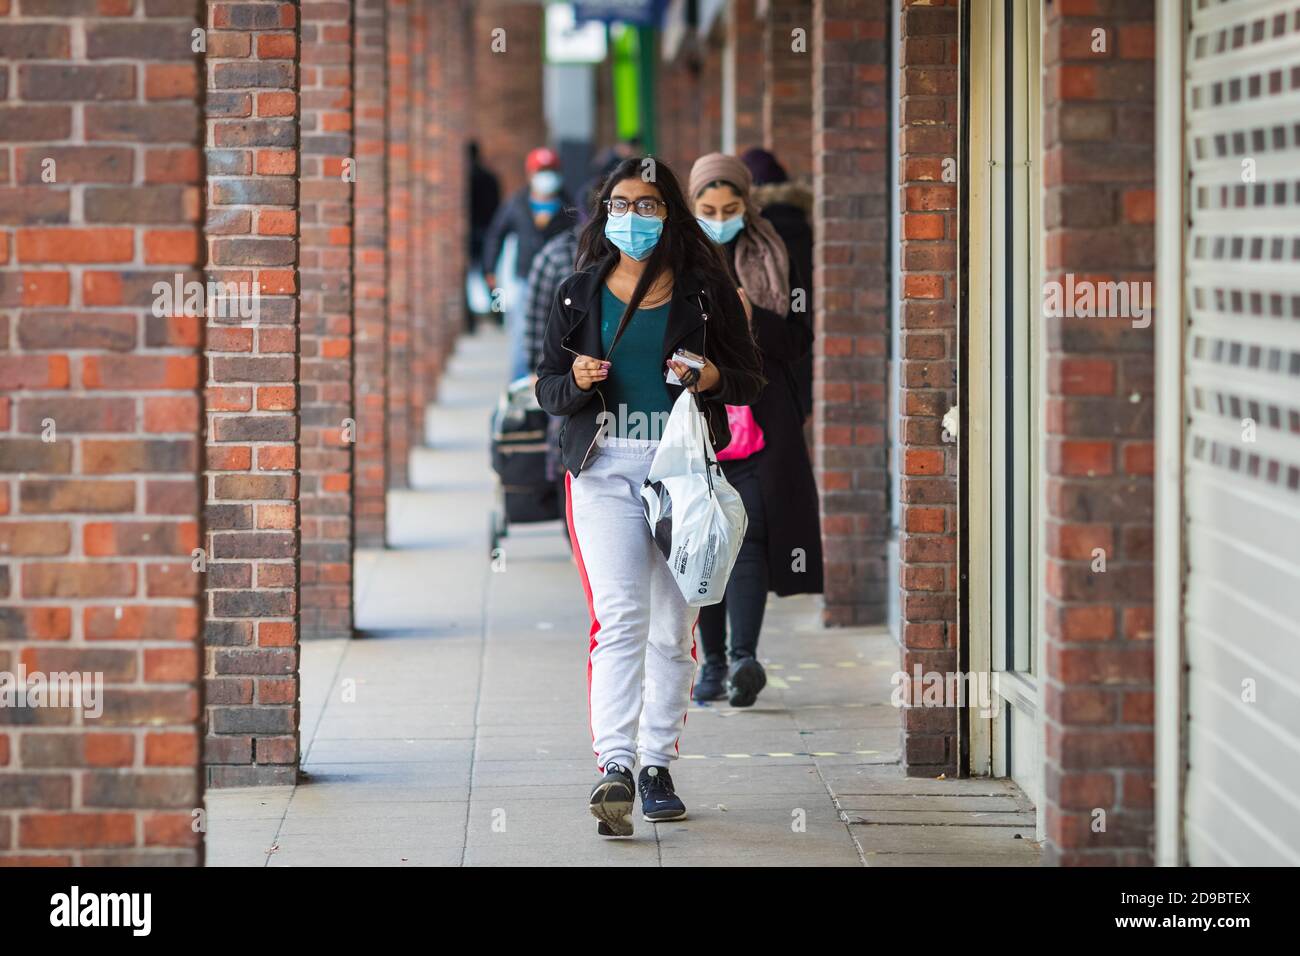 Londres, Royaume-Uni - 3 novembre 2020 - UNE jeune femme portant un masque facial lorsqu'elle fait ses courses sur le marché de Walthamstow Banque D'Images